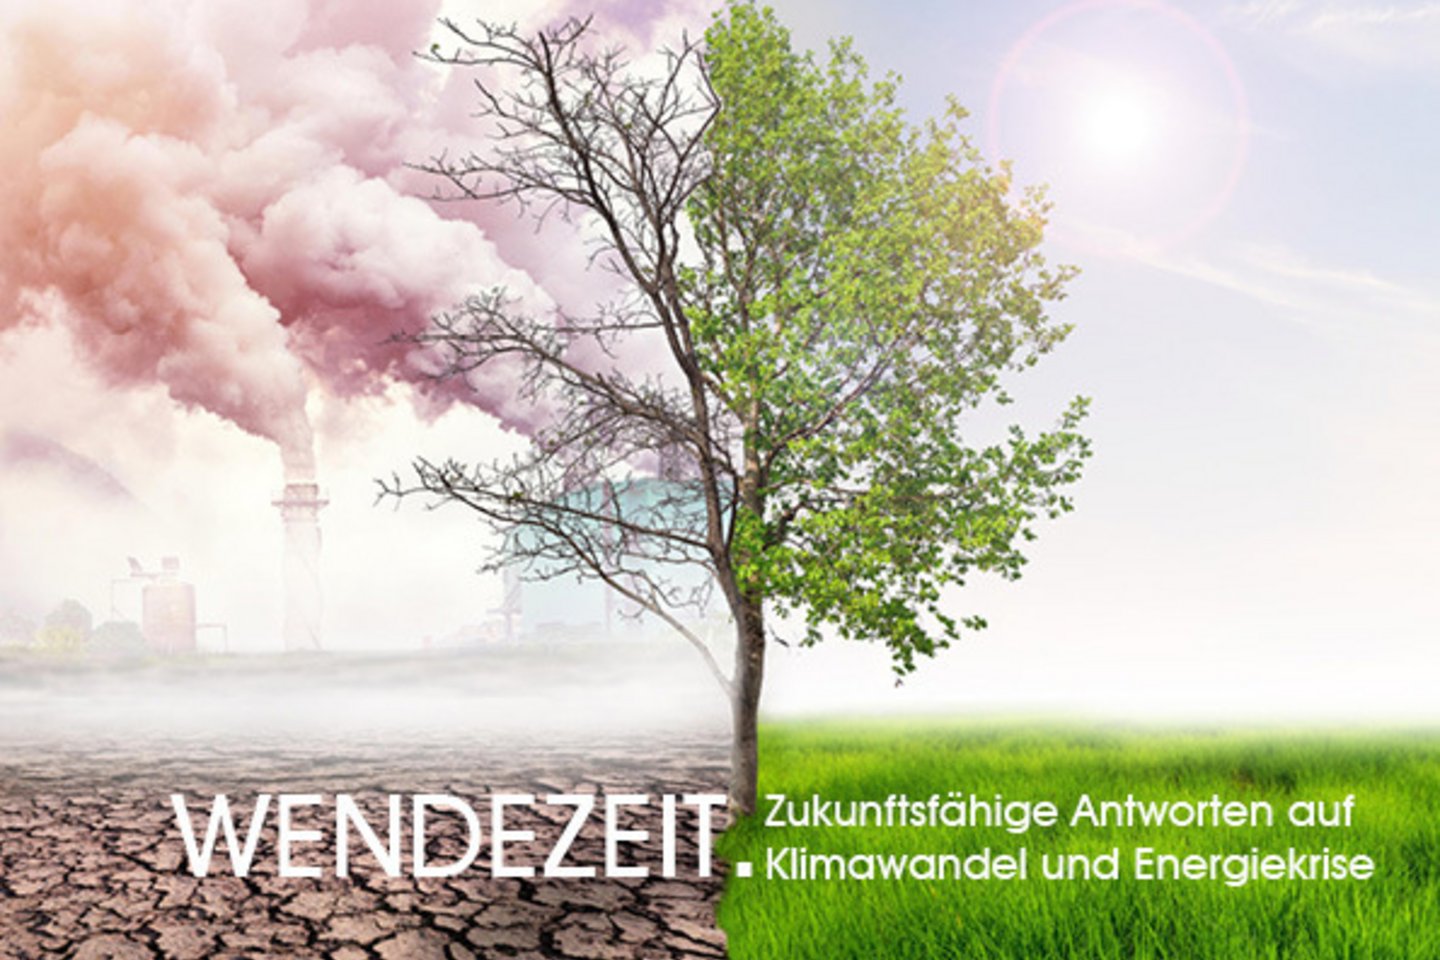 Wendezeit. Konferenz für zukunftsfähige Antworten auf Klimawandel und Energiekrise am Donnerstag 25. Oktober 2022 im AKW Zwentendorf